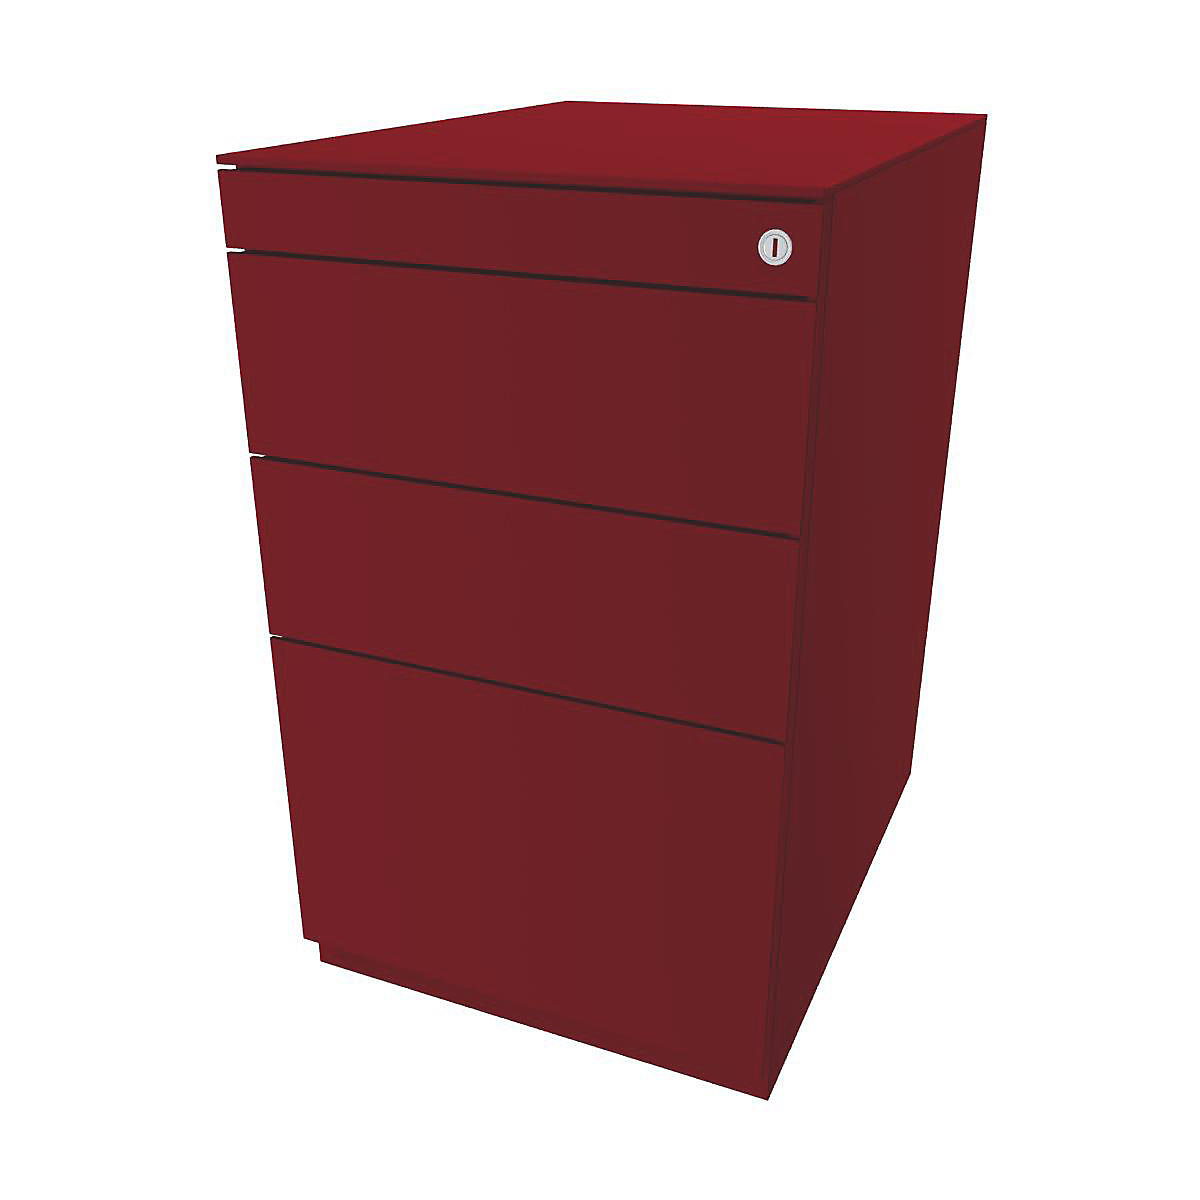 Caisson fixe Note™, avec 2 tiroirs universels, 1 tiroir pour dossiers suspendus – BISLEY, avec plateau de finition, prof. 565 mm, rouge cardinal-11